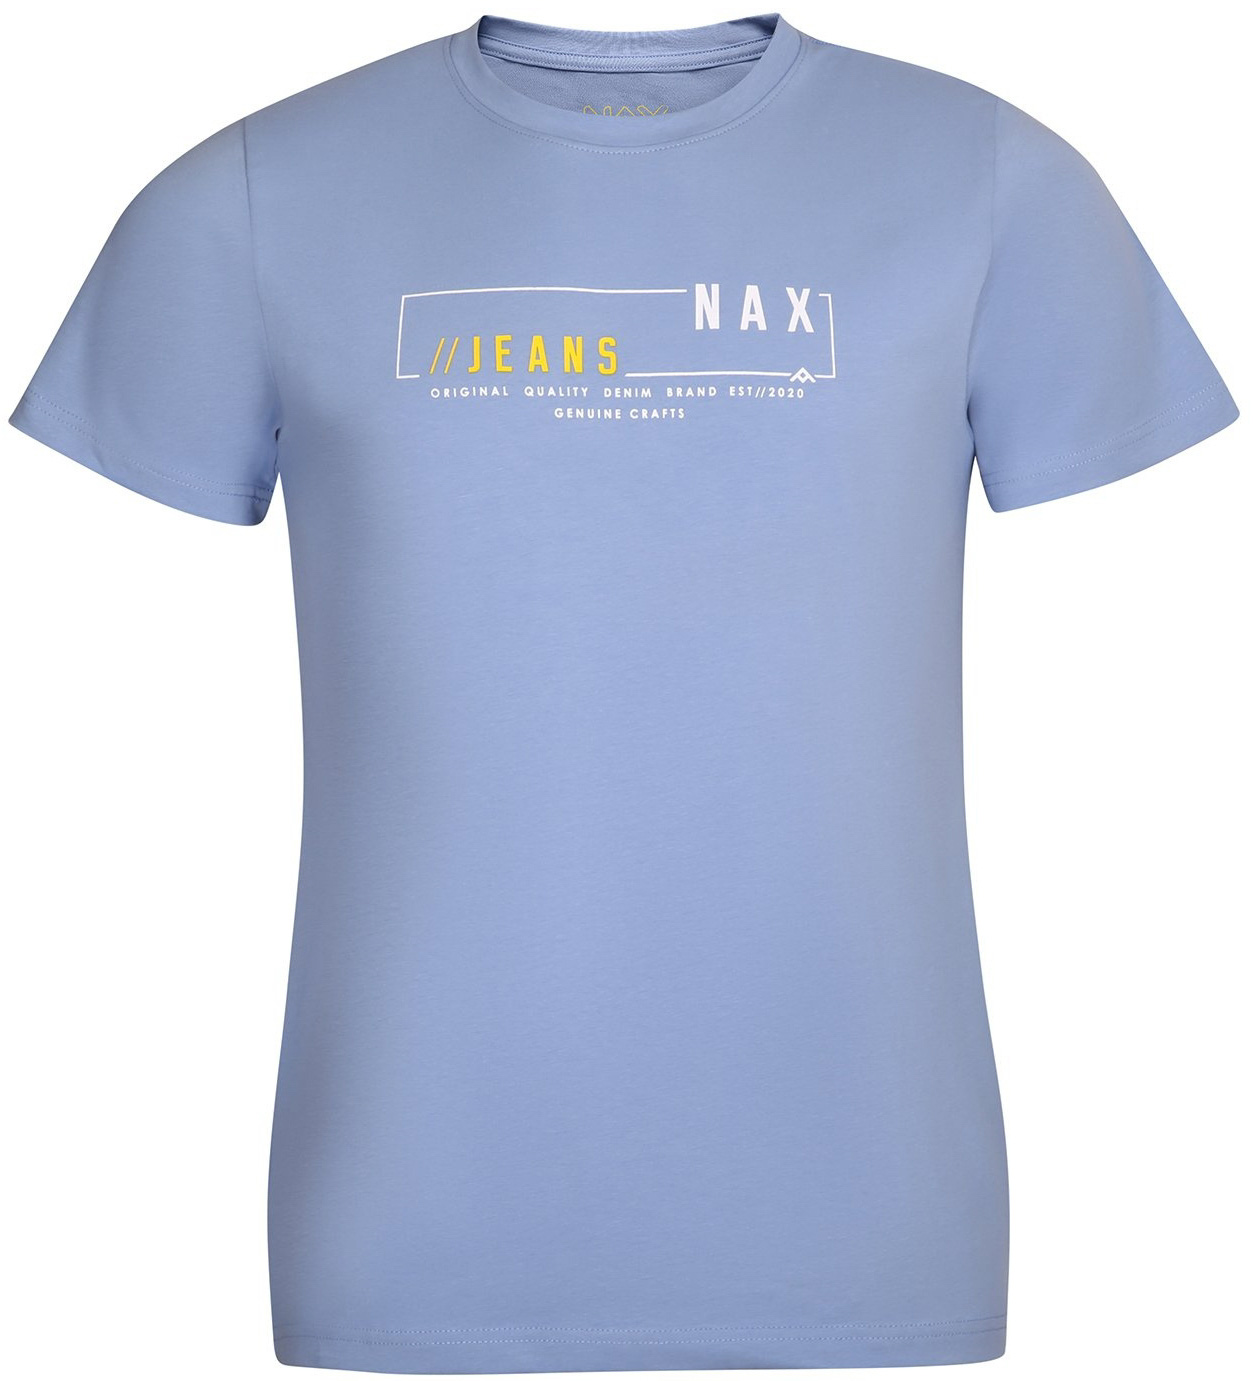 Pánské triko Nax Vobew|XL